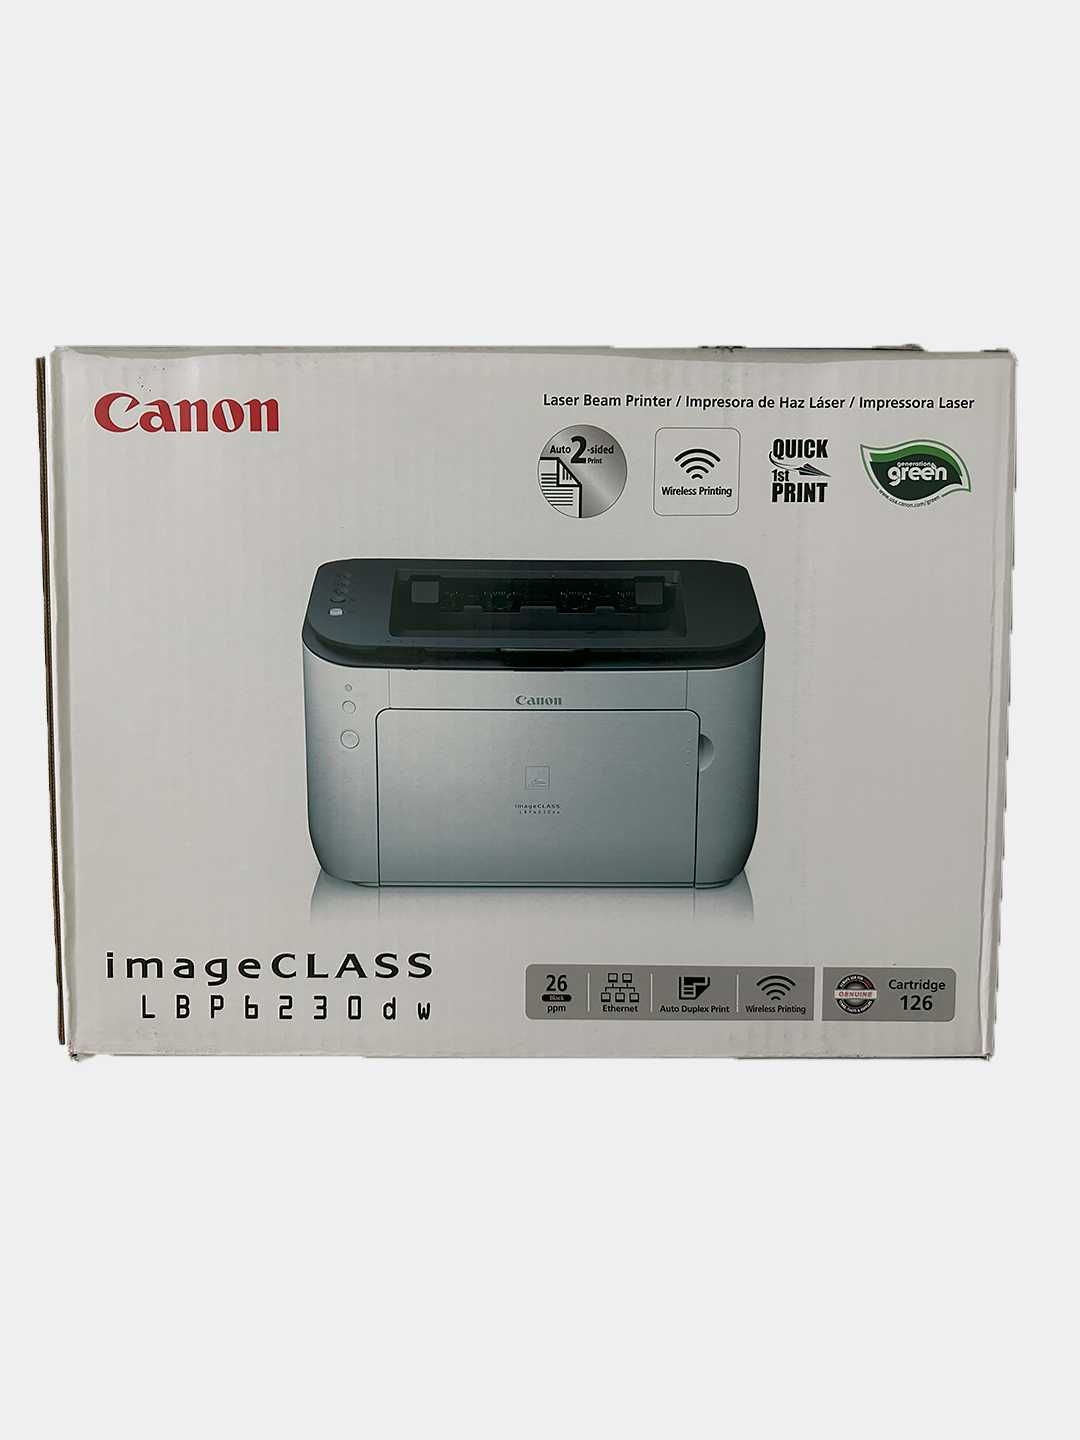 Принтер CANON imageClasss 6230dw Duplex+wifi ПЕРЕЧЕСЛЕНИЯ ЕСТЬ НДС